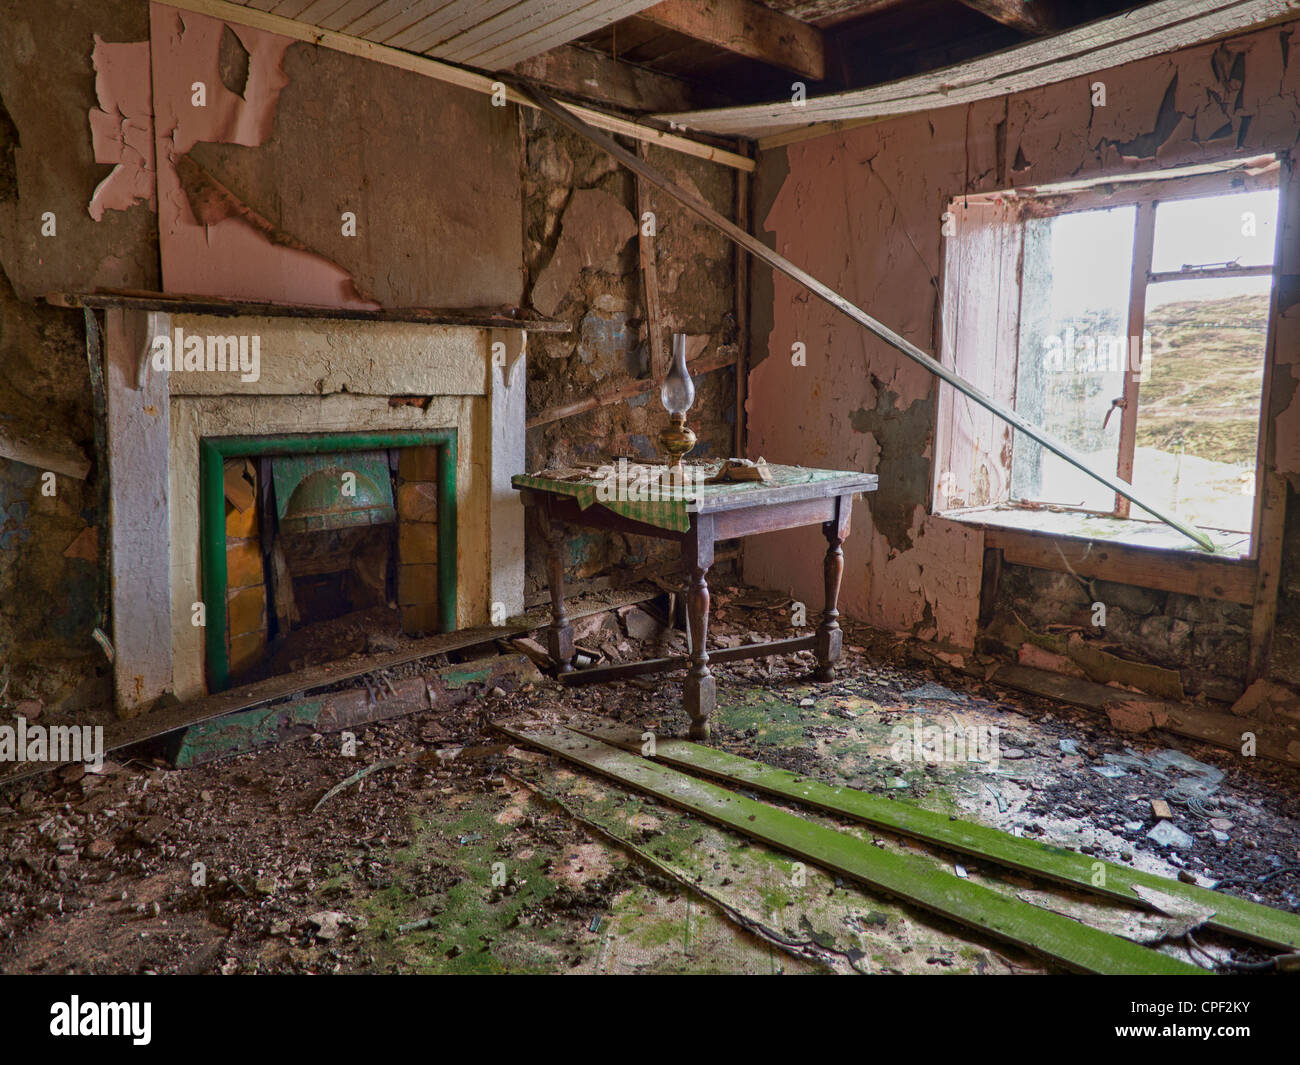 Interior of Abandoned Croft House, Isle of Lewis, Scotland Stock Photo